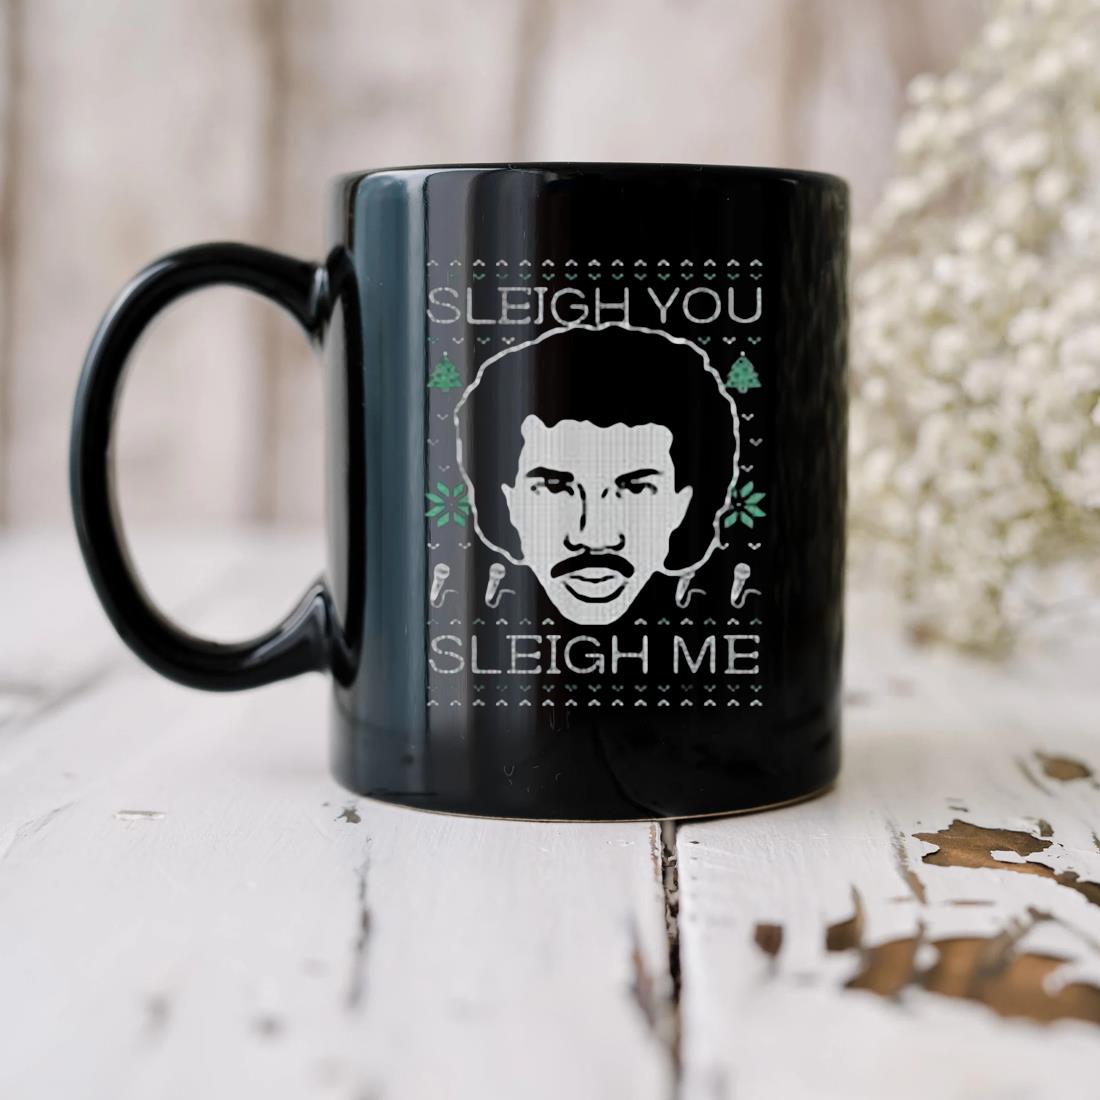 Lionel Richie Sleigh You Sleigh Me Ugly Christmas Mug biu